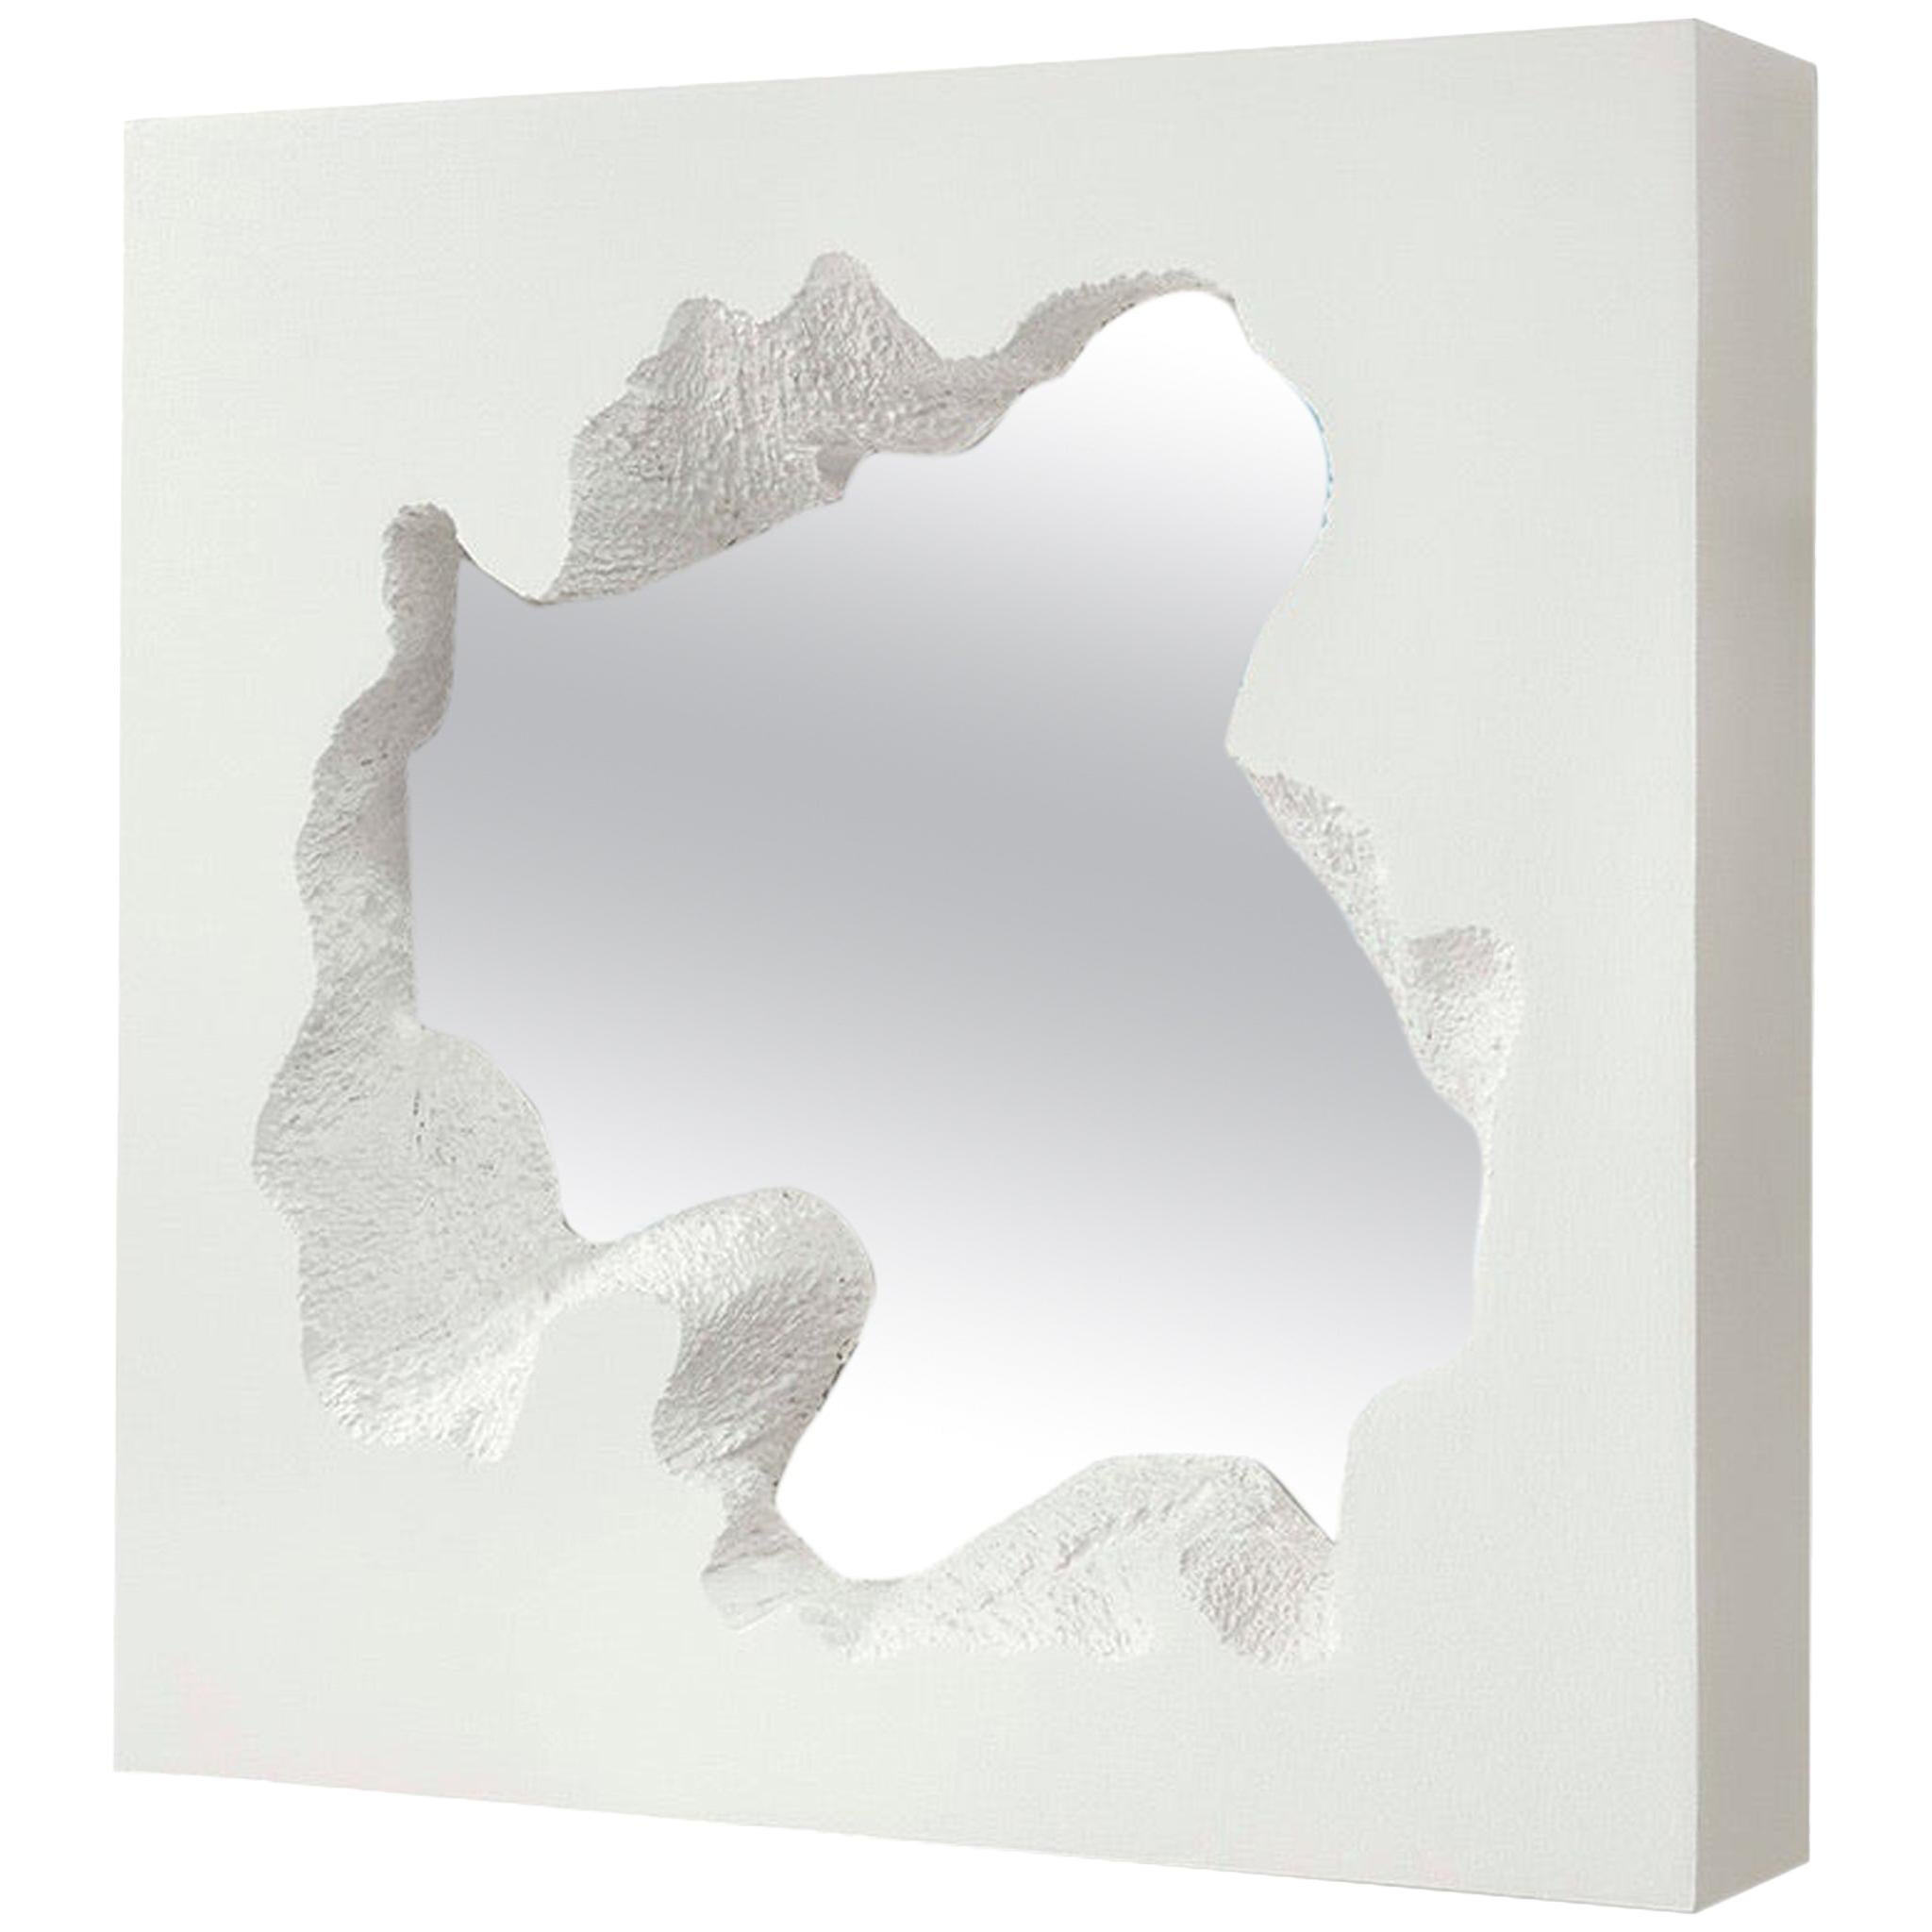 Miroir carré blanc « Broken » de Gufram par Snarkitecture, édition limitée à 77 exemplaires